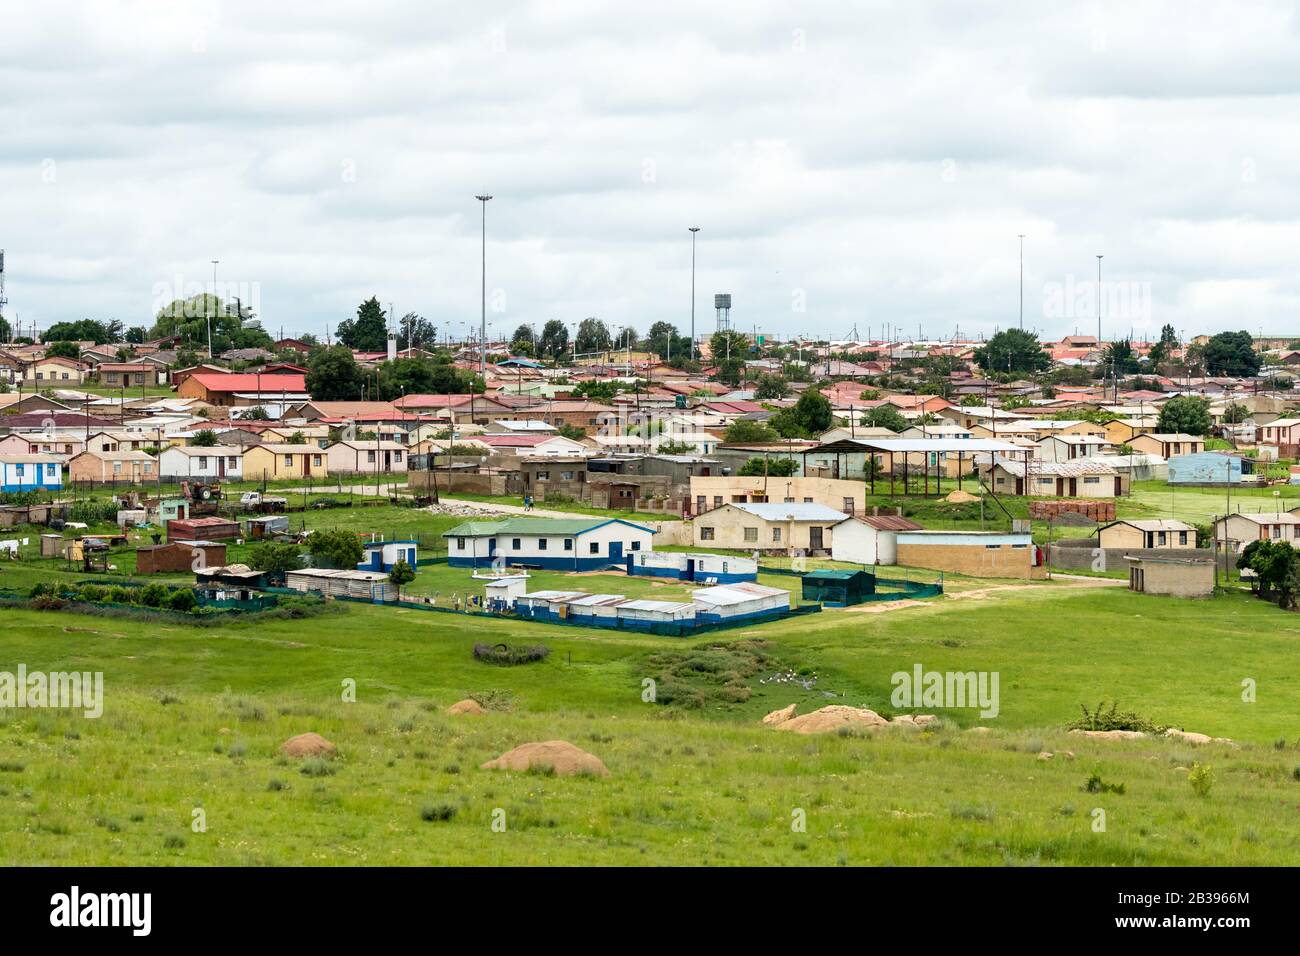 Vue panoramique sur une petite ville et une communauté rurales africaines dans la province de l'État libre, Afrique du Sud Banque D'Images